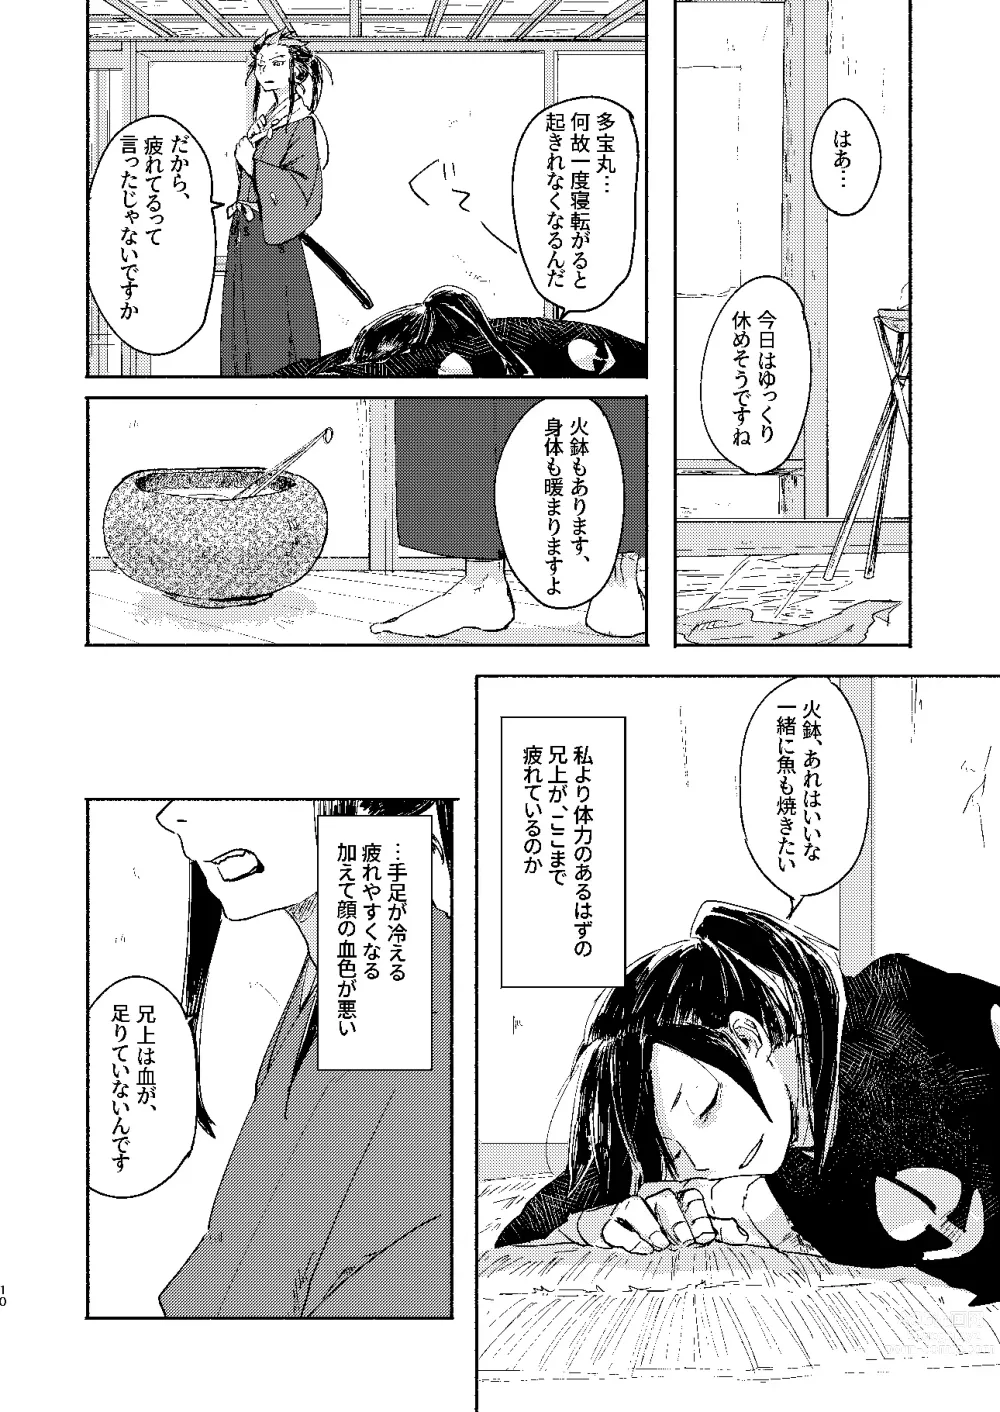 Page 10 of doujinshi Ute na no Katawara ni